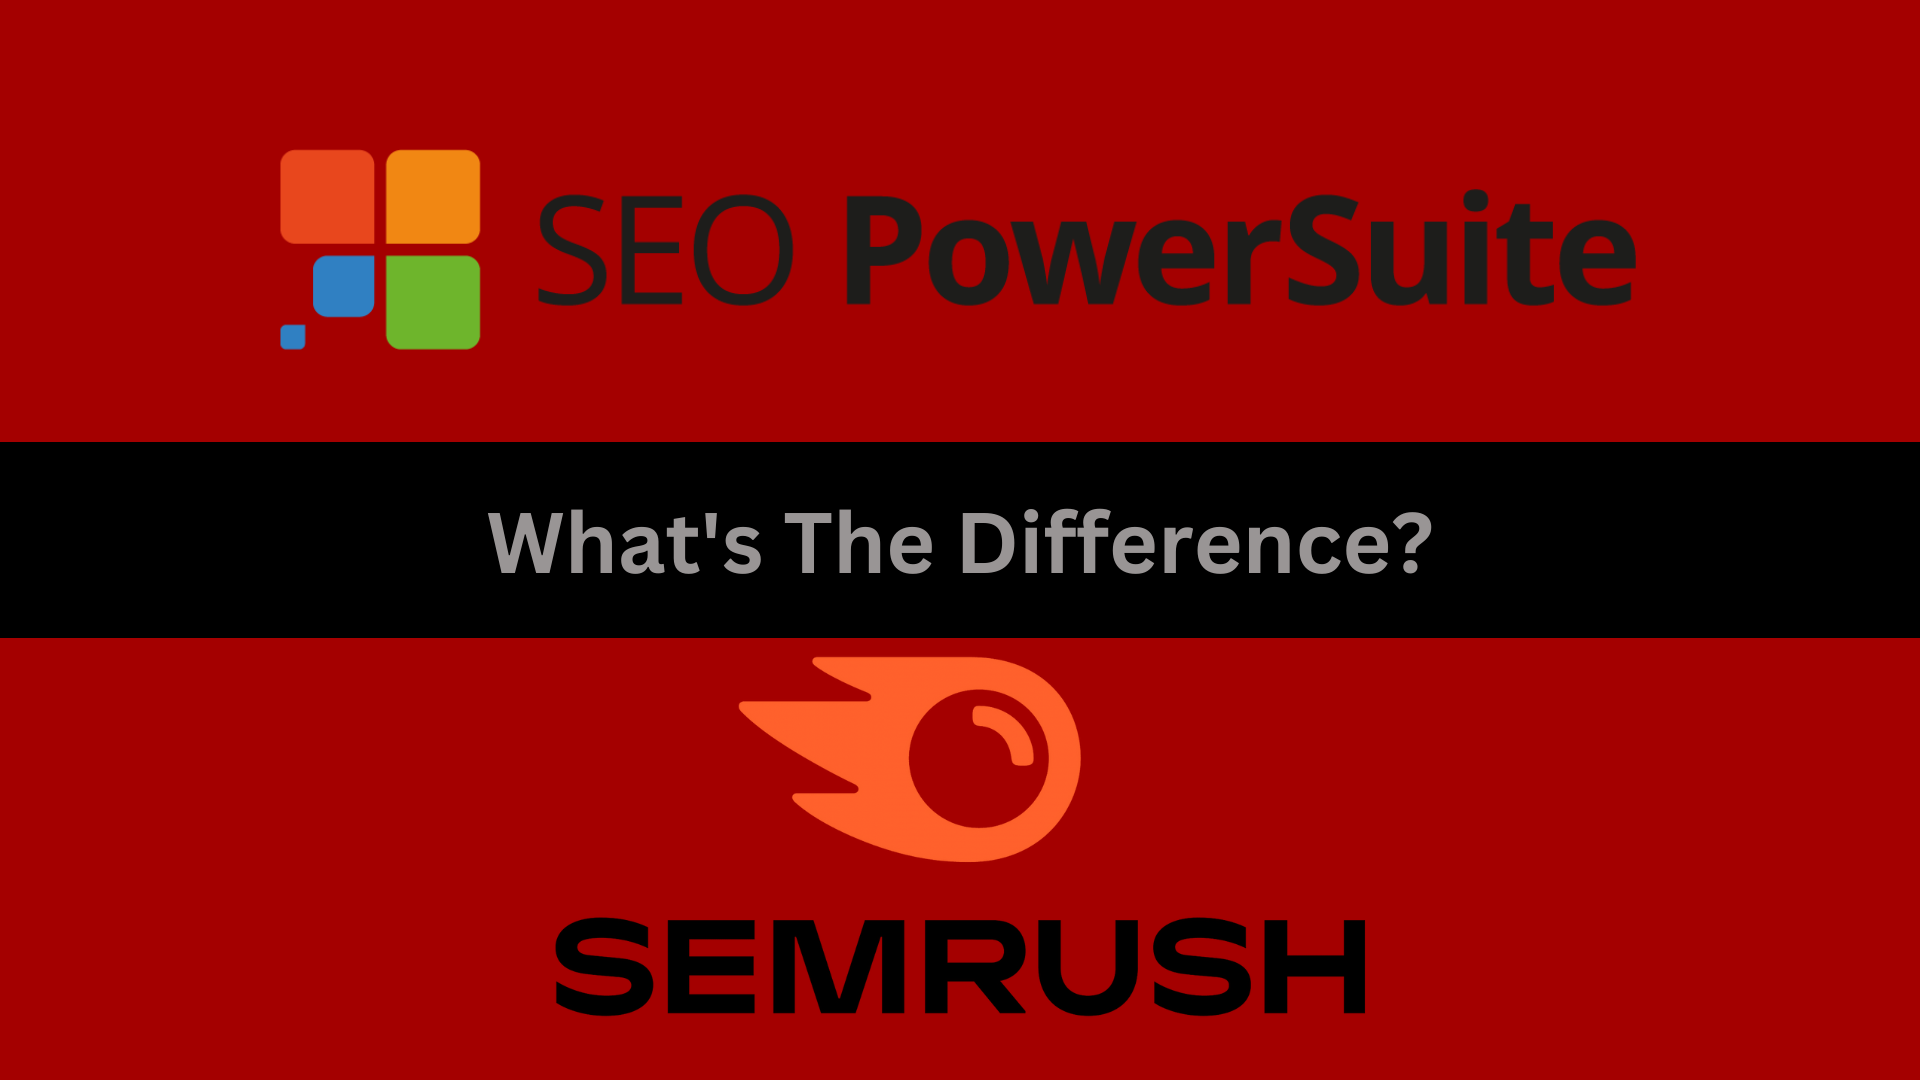 seo powersuite vs semrush comparison